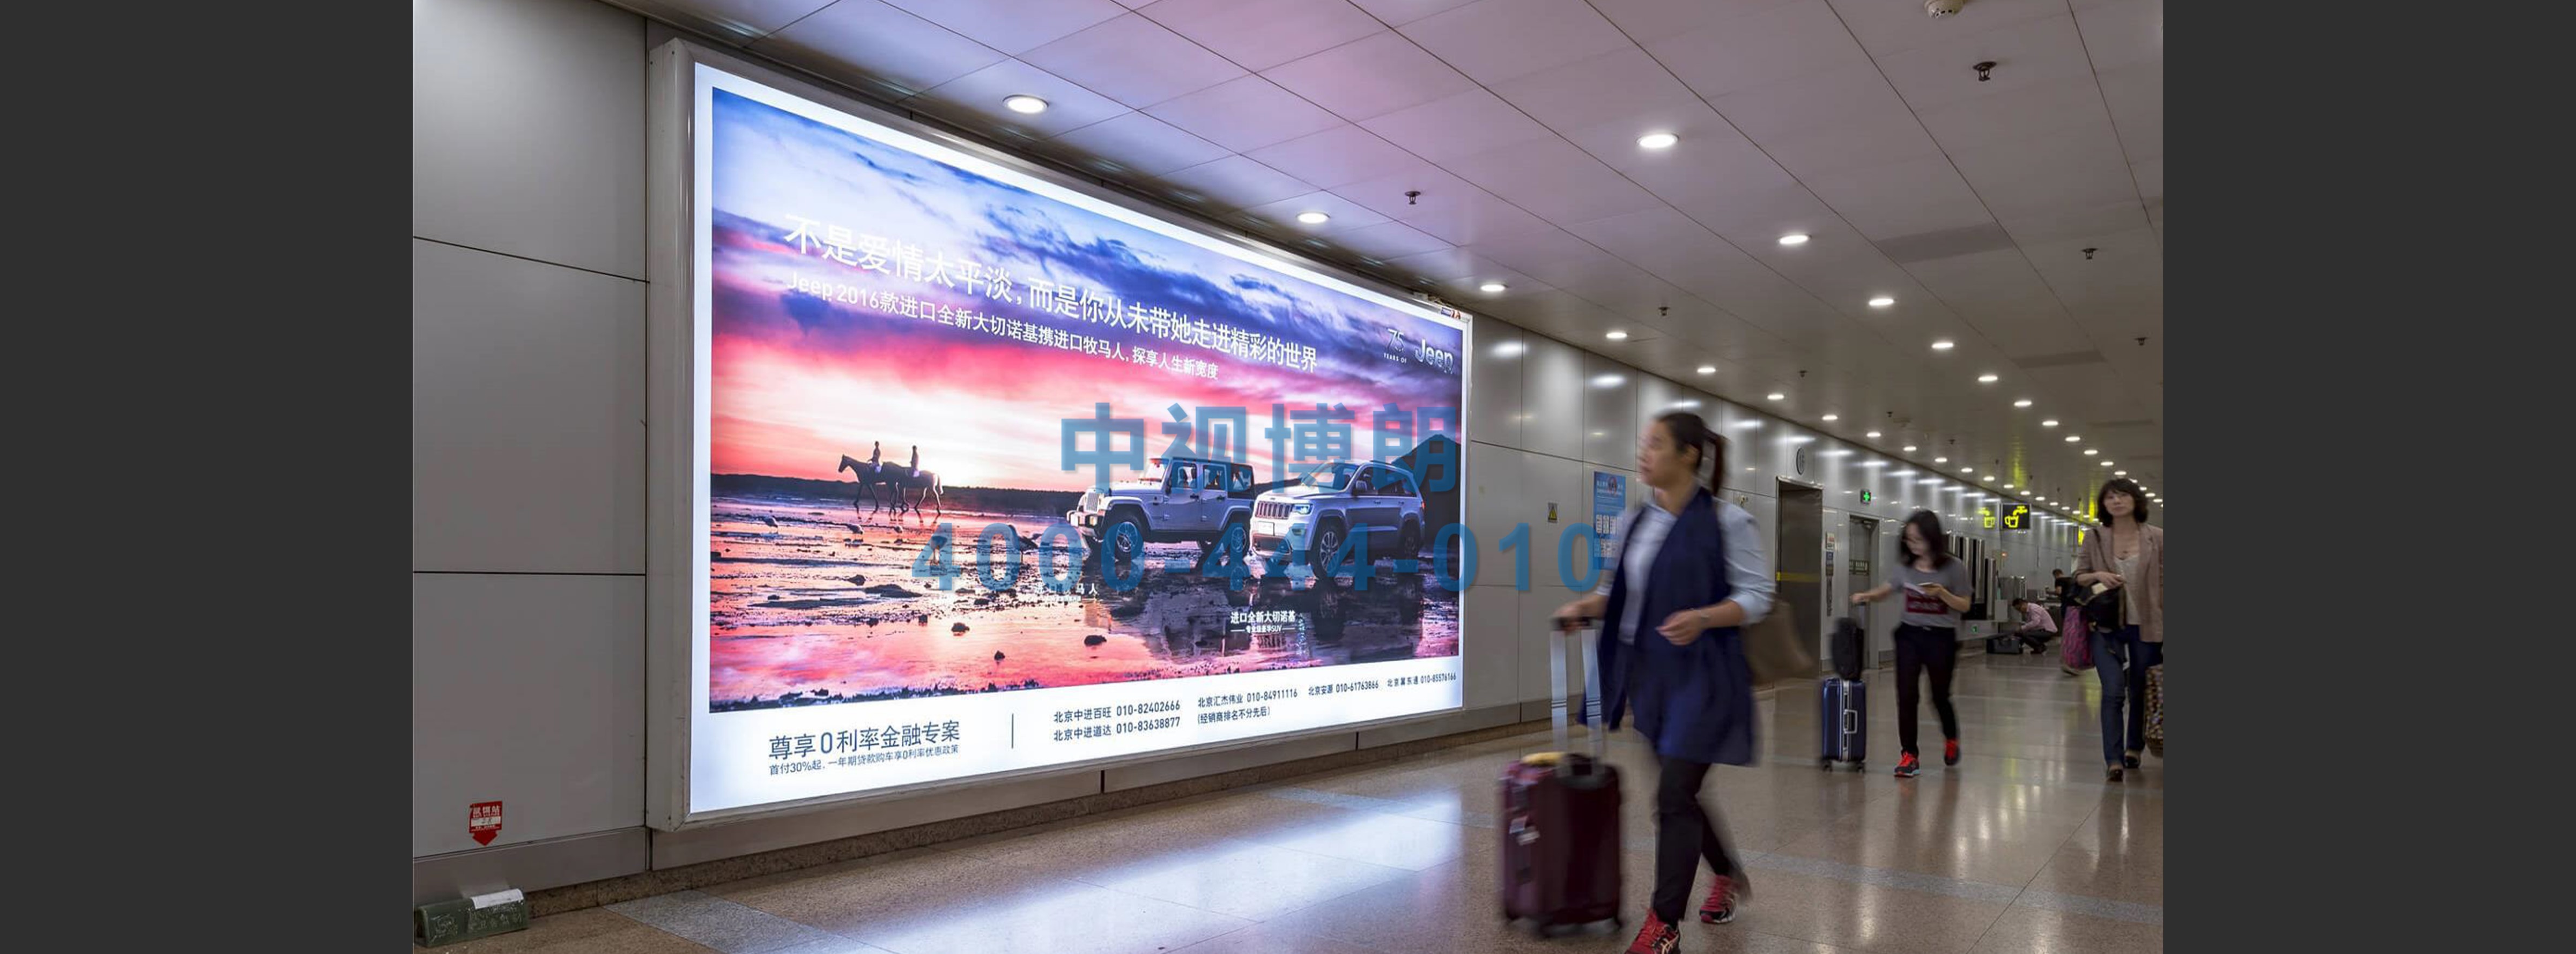 北京首都机场广告-T2国内到达行李厅灯箱1A